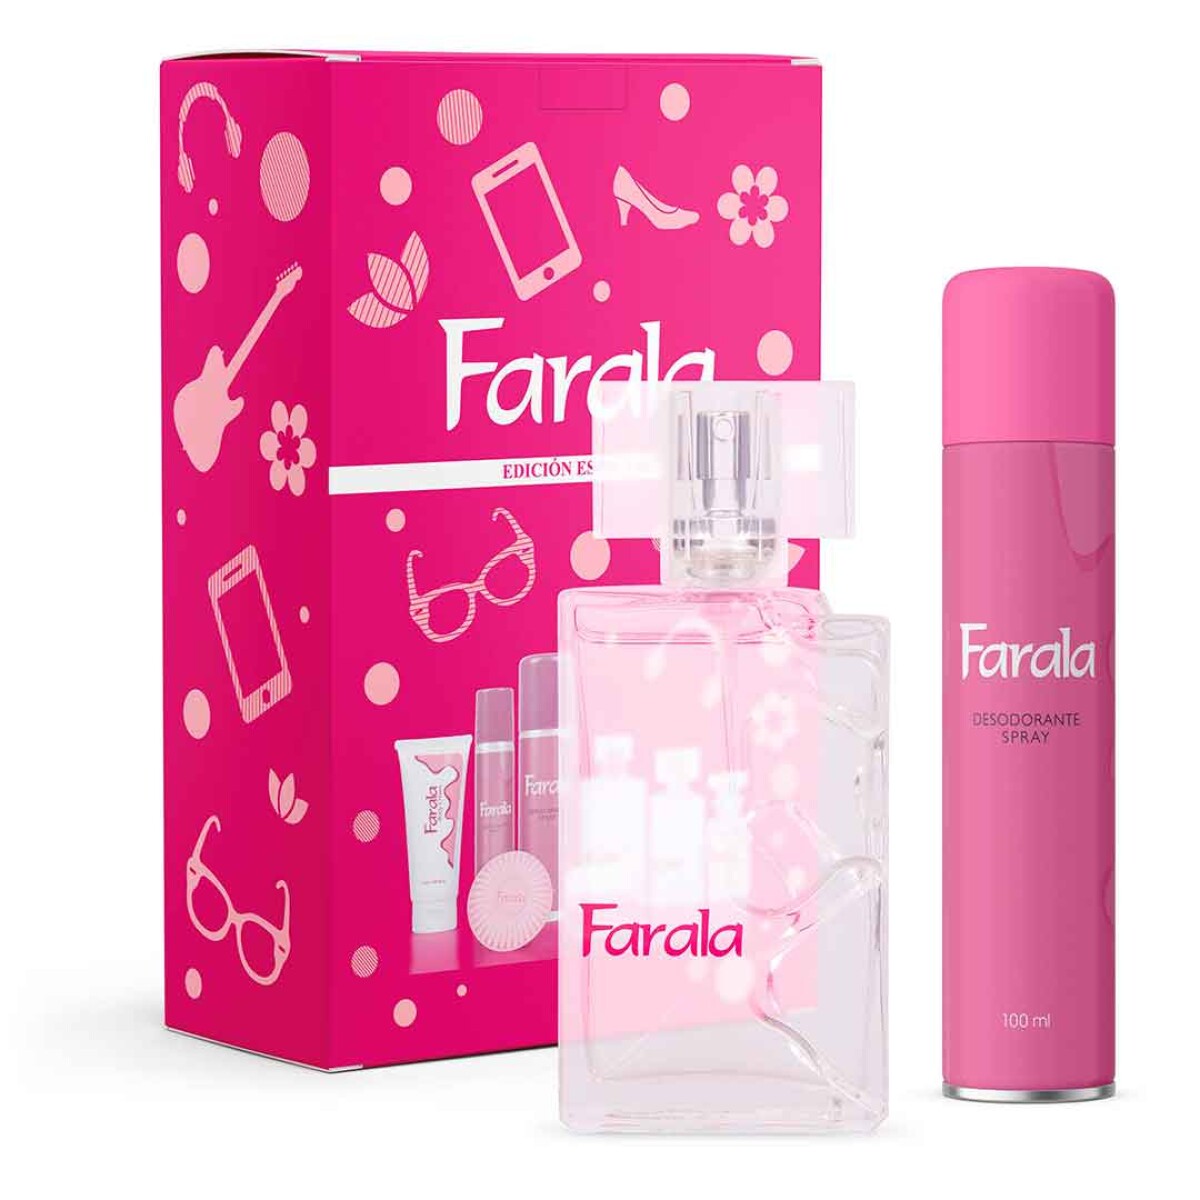 Set Farala perfume 100ml + desodorante spray 100ml - 001 